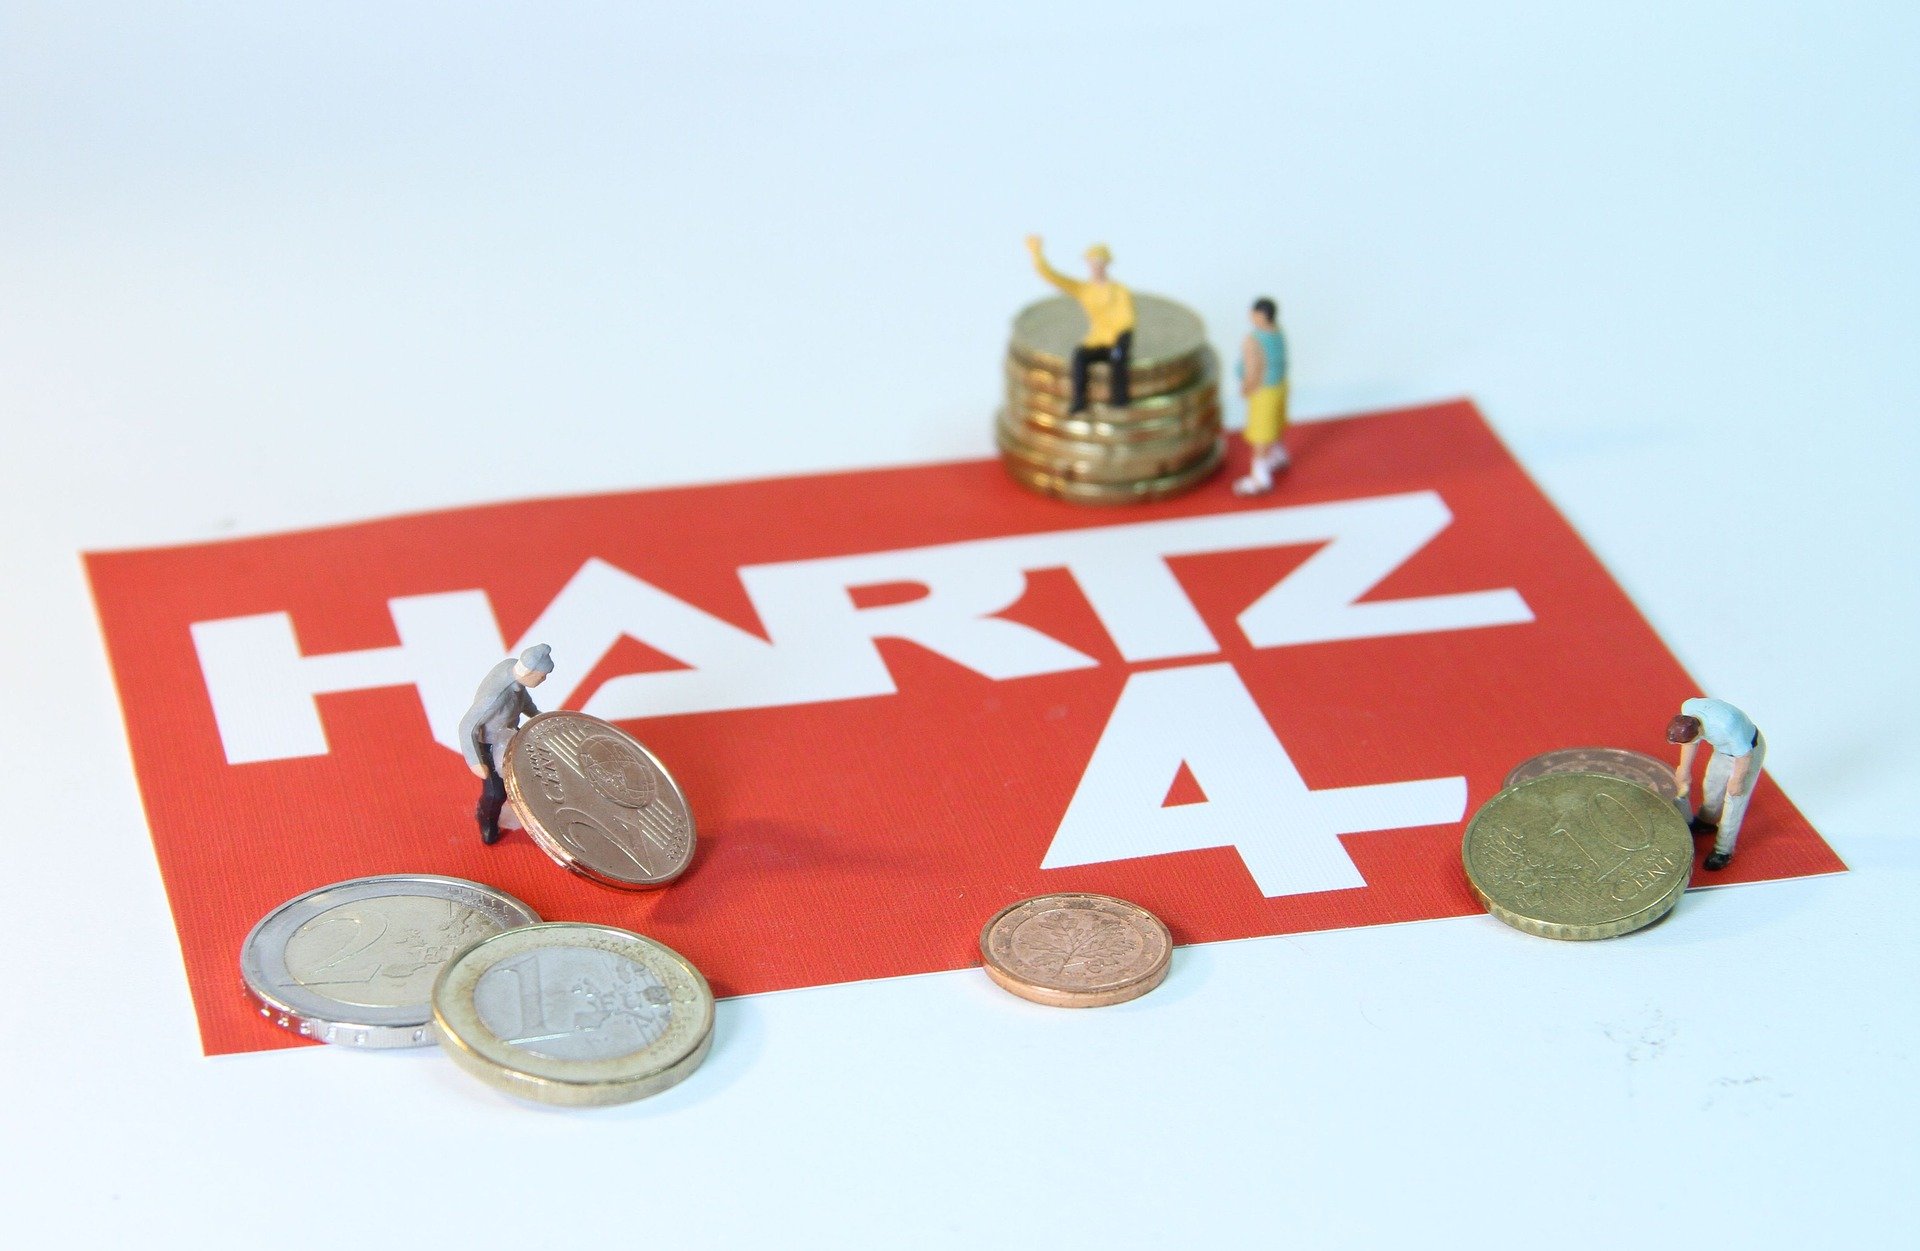 Miniaturfiguren spielen mit Euromünzen. Zwei Figuren heben eine Centmünze hoch, eine sitzt auf einem Stapel Münzen. Auf dem roten Boden unter den Münzen steht „Hartz 4“. Das Bild steht symbolisch für Menschen, die Sozialhilfe beziehen.